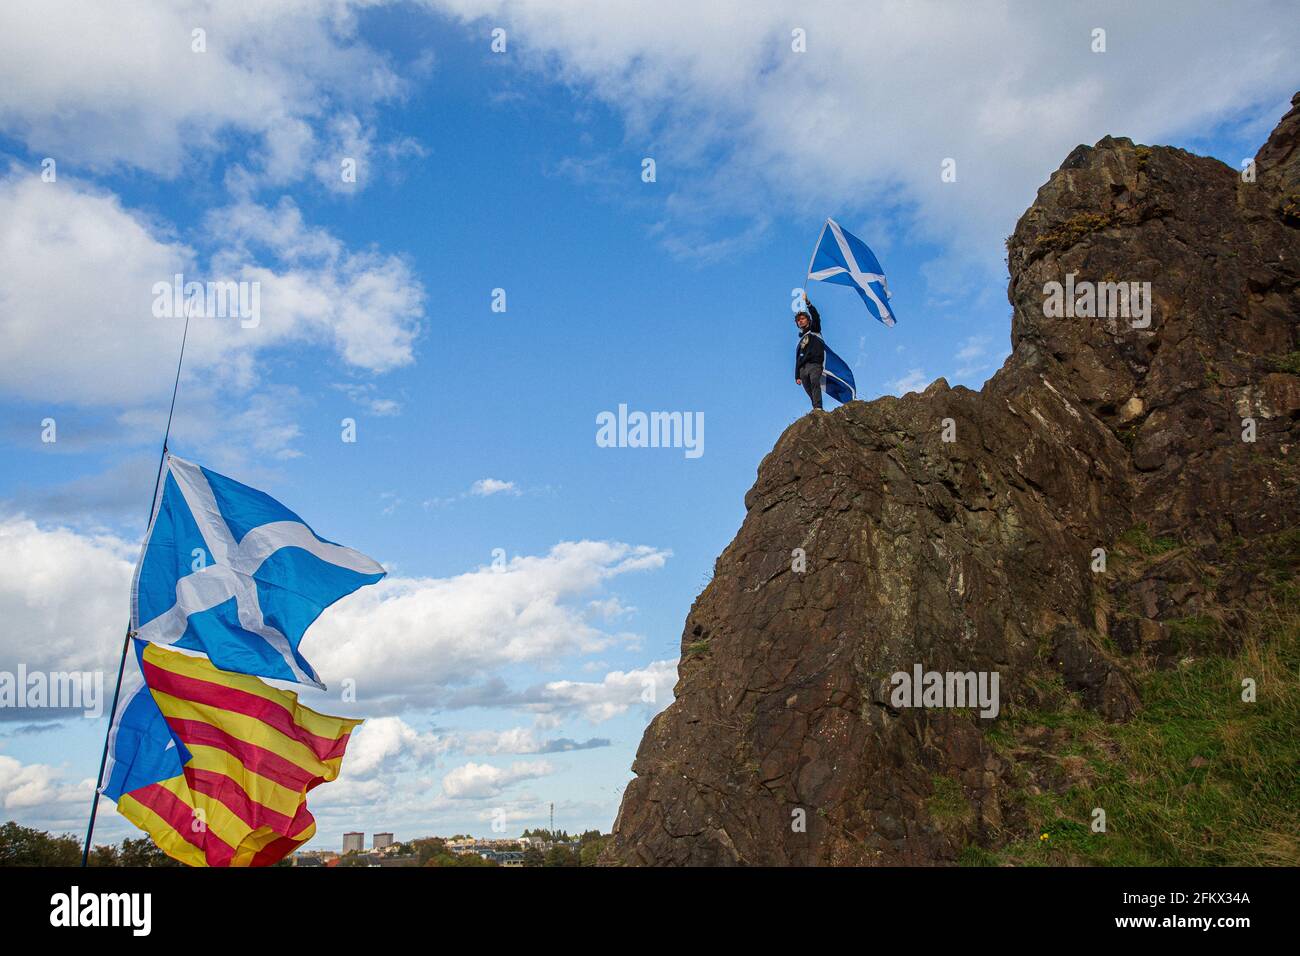 SCOZIA / EDIMBURGO / UN giovane scozzese sulla postazione di Arthur che tesse una bandiera per un'indipendenza Pro Scottish. Foto Stock